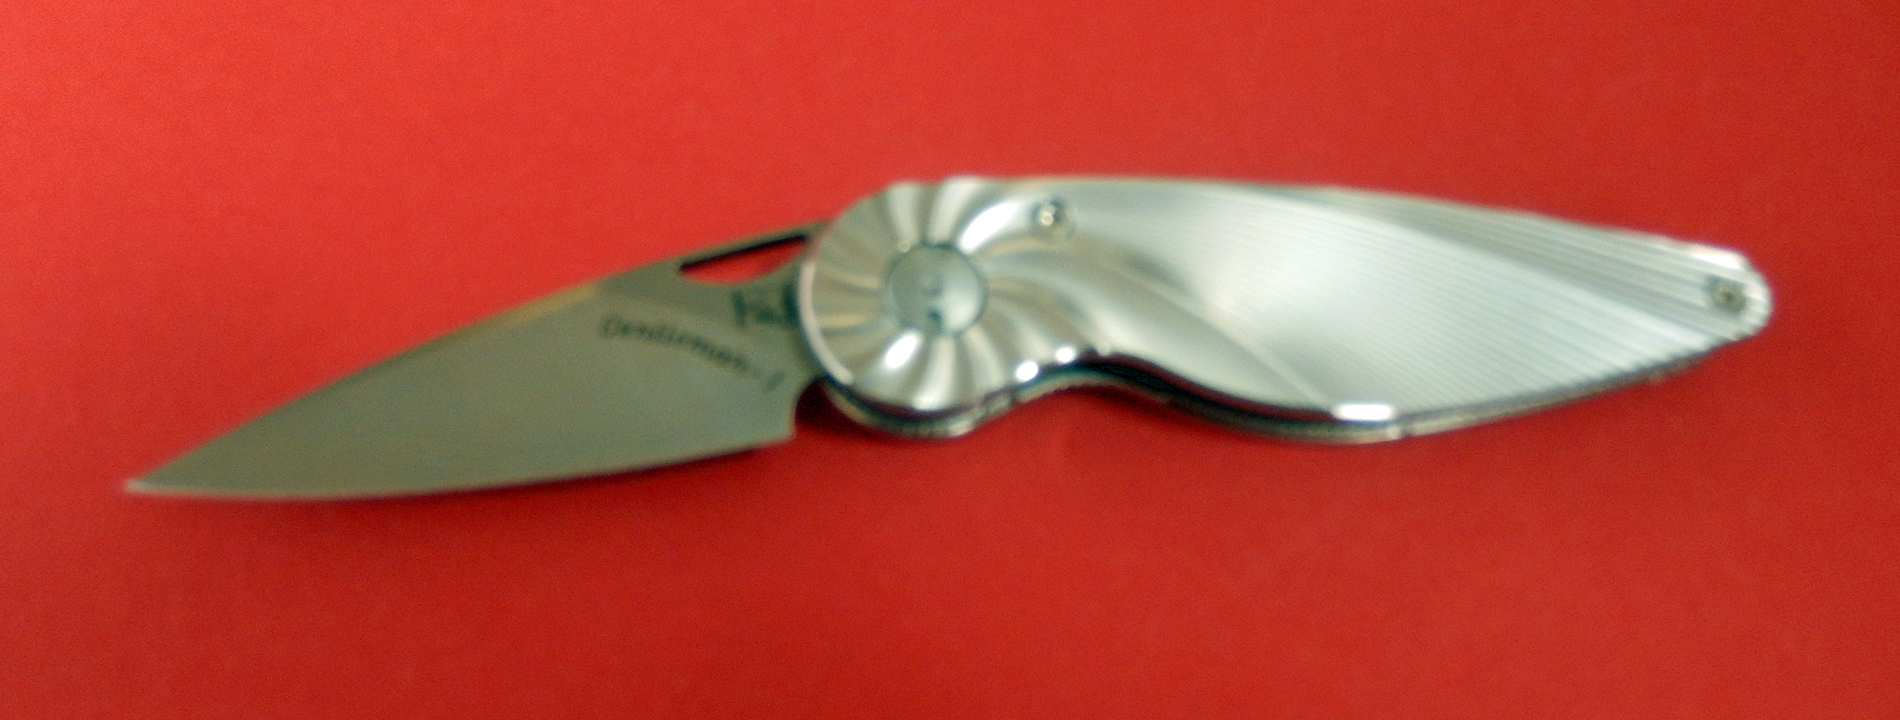 Einhandmesser Taschenmesser 5,4 cm Edelstahl-Heft von Eickhorn  Made in SG bei ISS